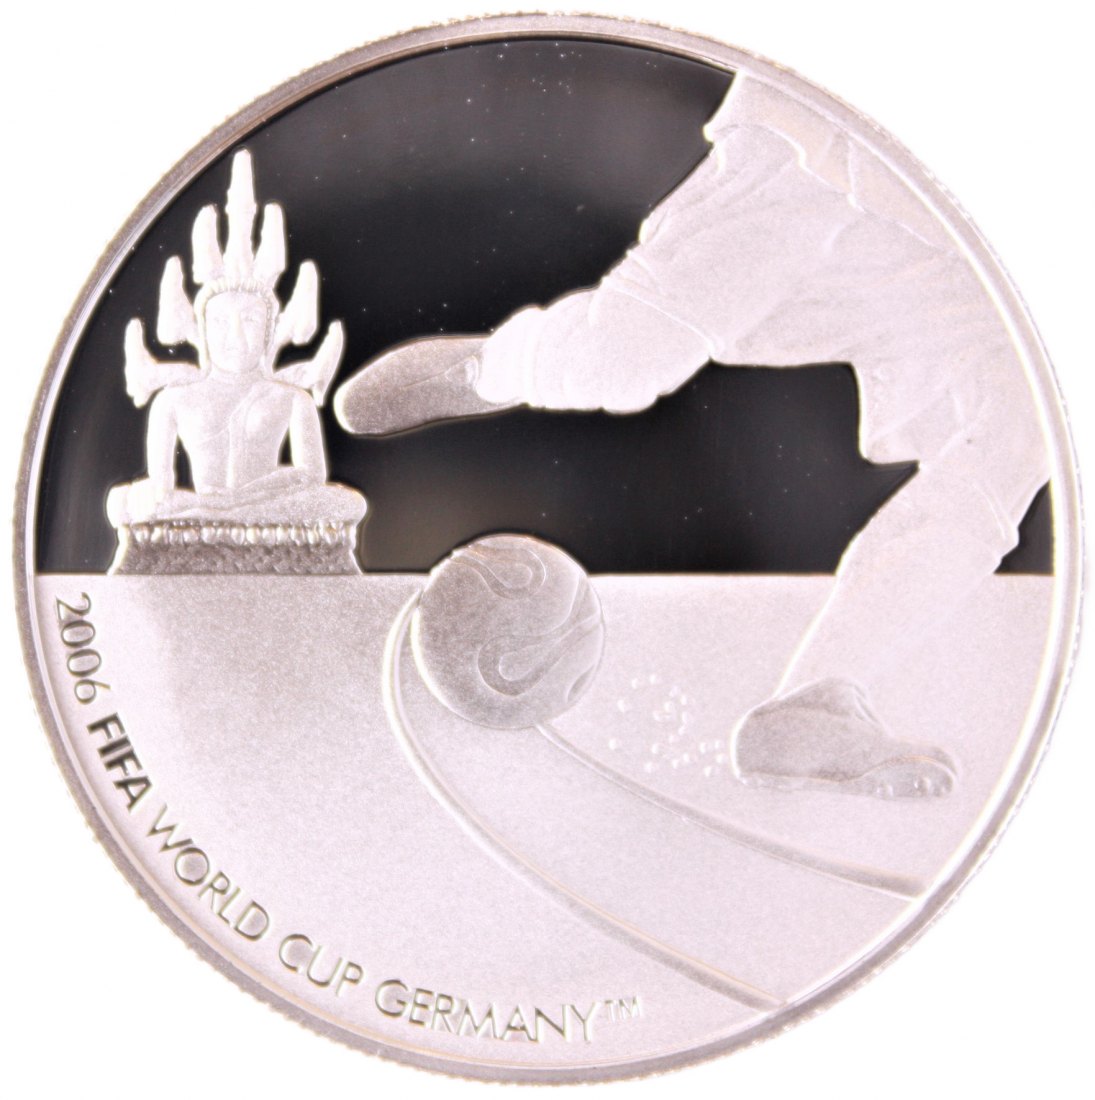  Laos: 1000 Kip 2006, Fussball WM Deutschland, 28,20 gr. 925er Silber, pp   